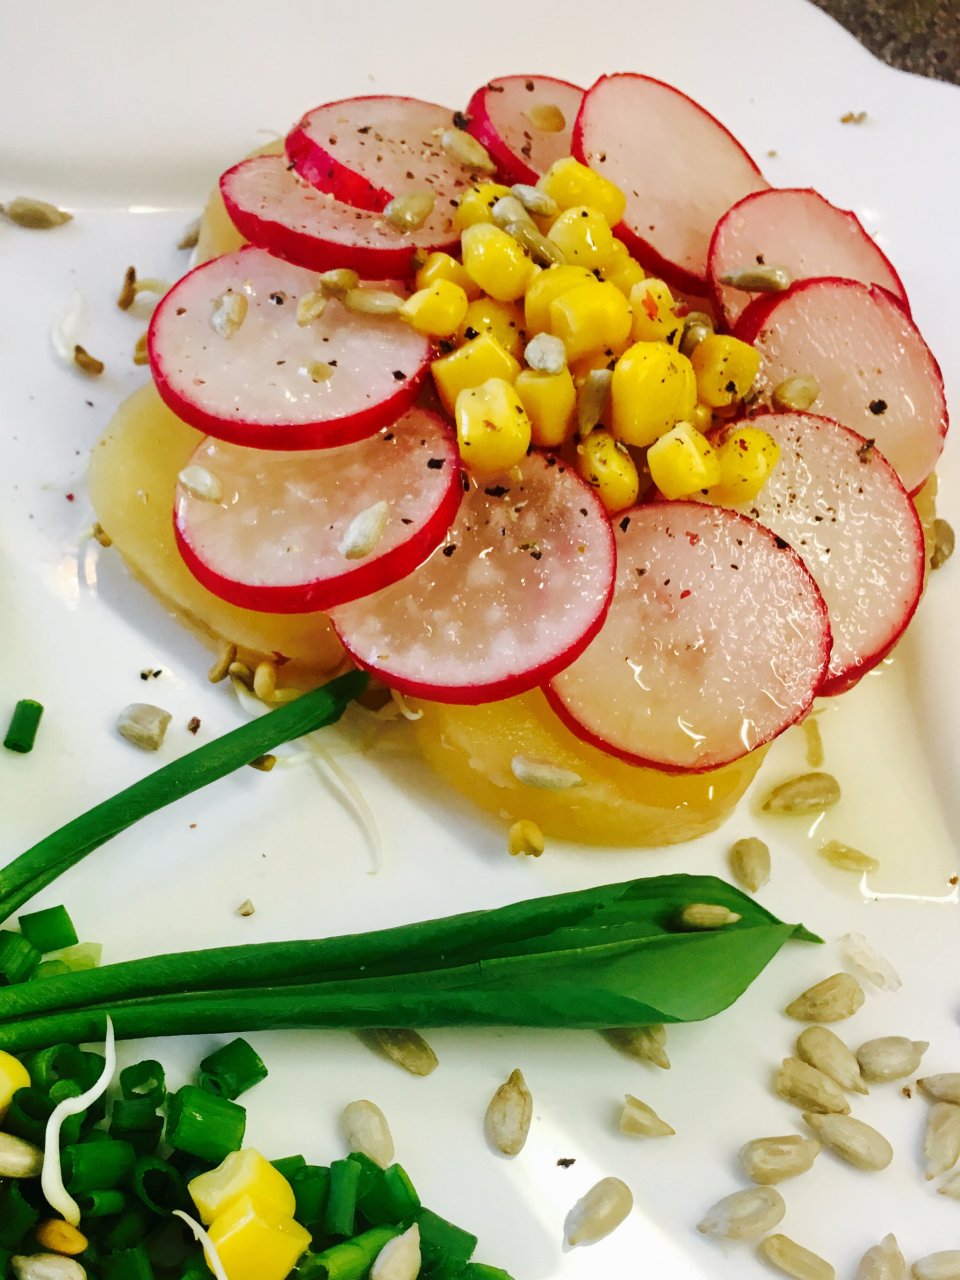 Постный салат "Цветочек Аленький " с редисом, подростками пажитника, и ароматным маслом.